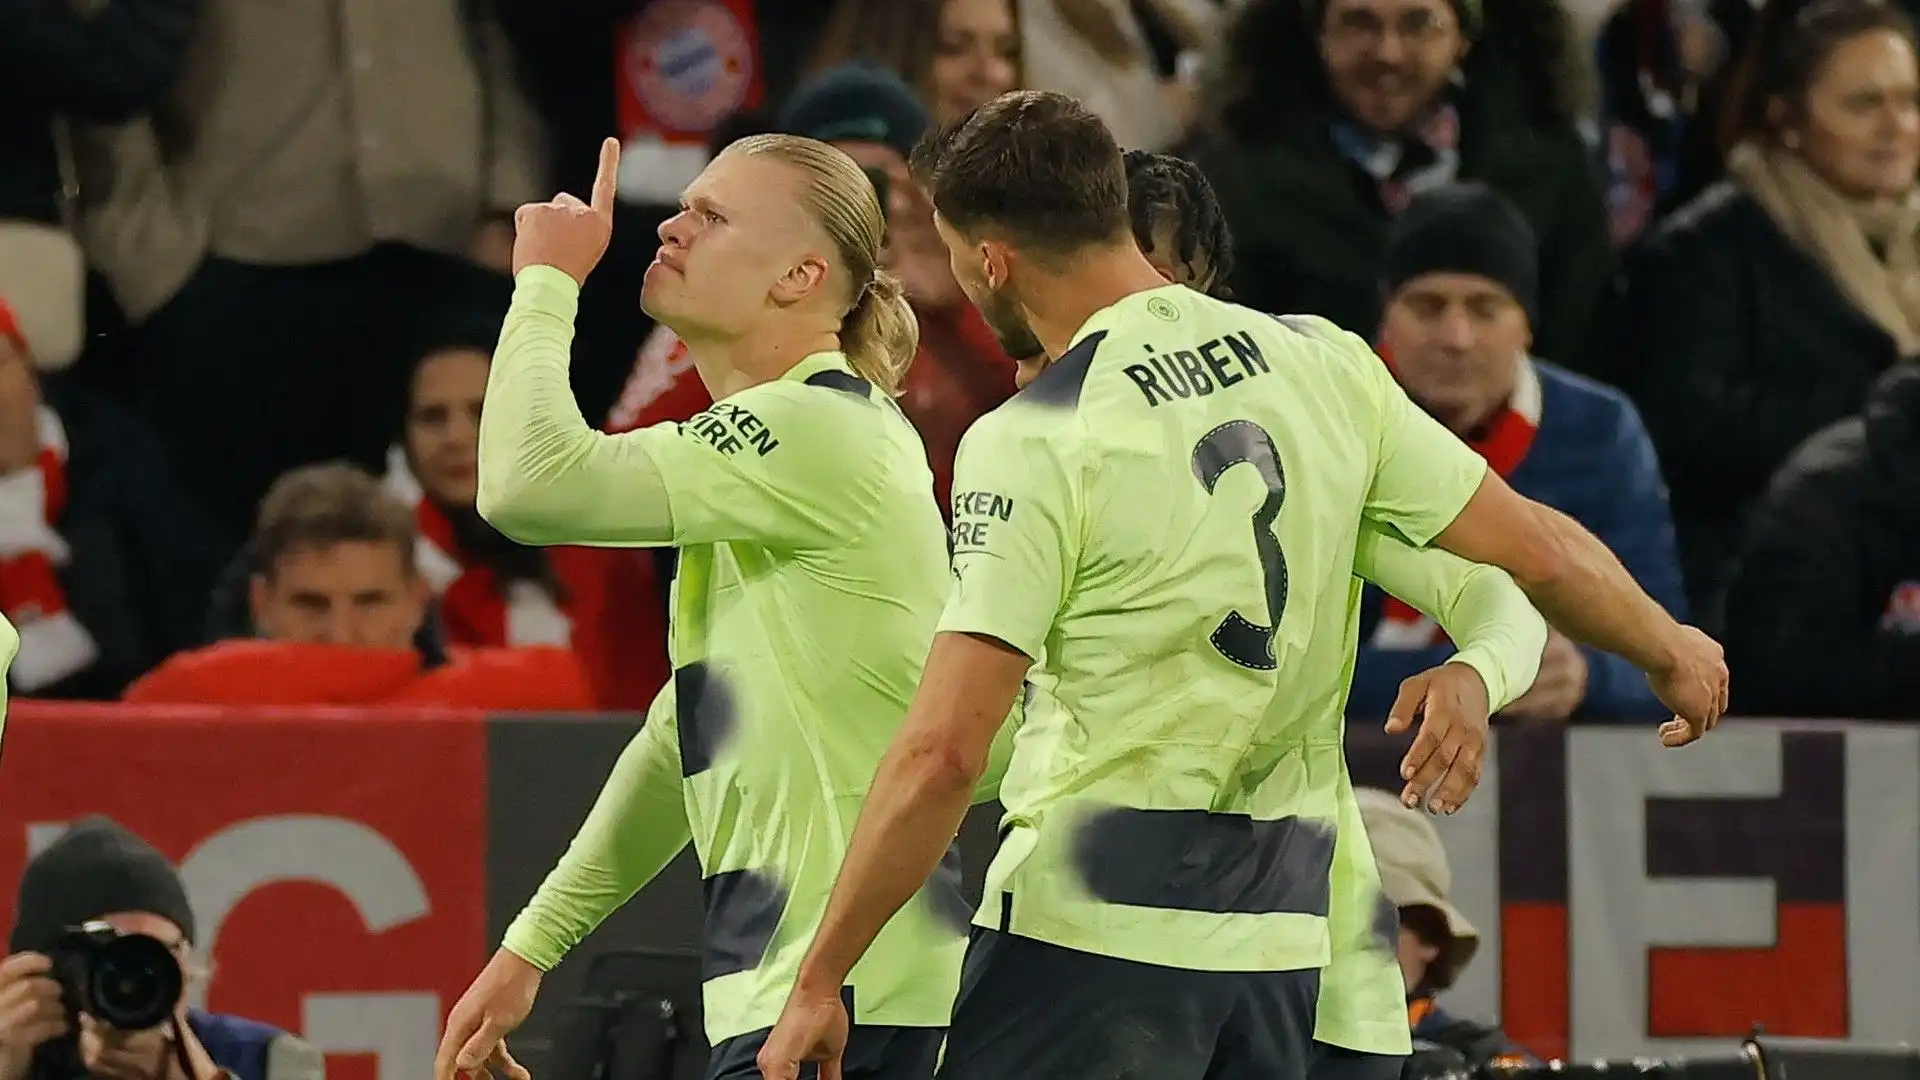 Il campione del Manchester City per festeggiare si è messo un dito davanti alla bocca e ha zittito i tifosi del Bayern Monaco